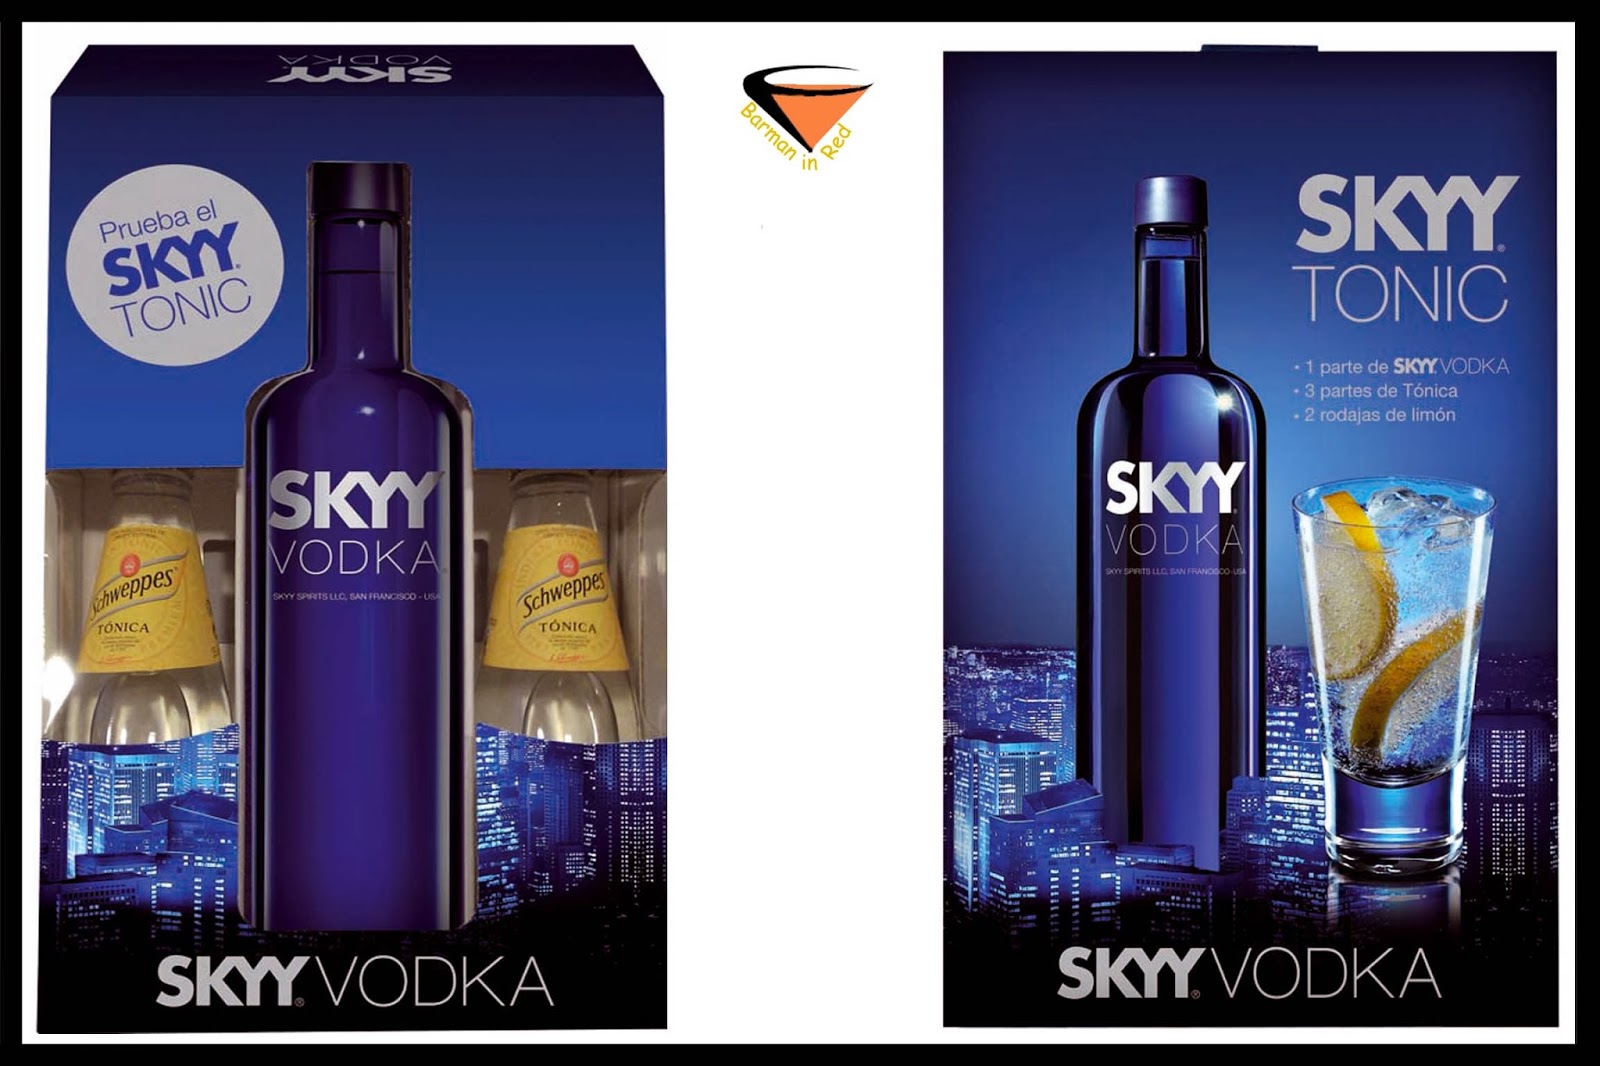 skyy-vodka-presenta-el-perfecto-vodka-tonic